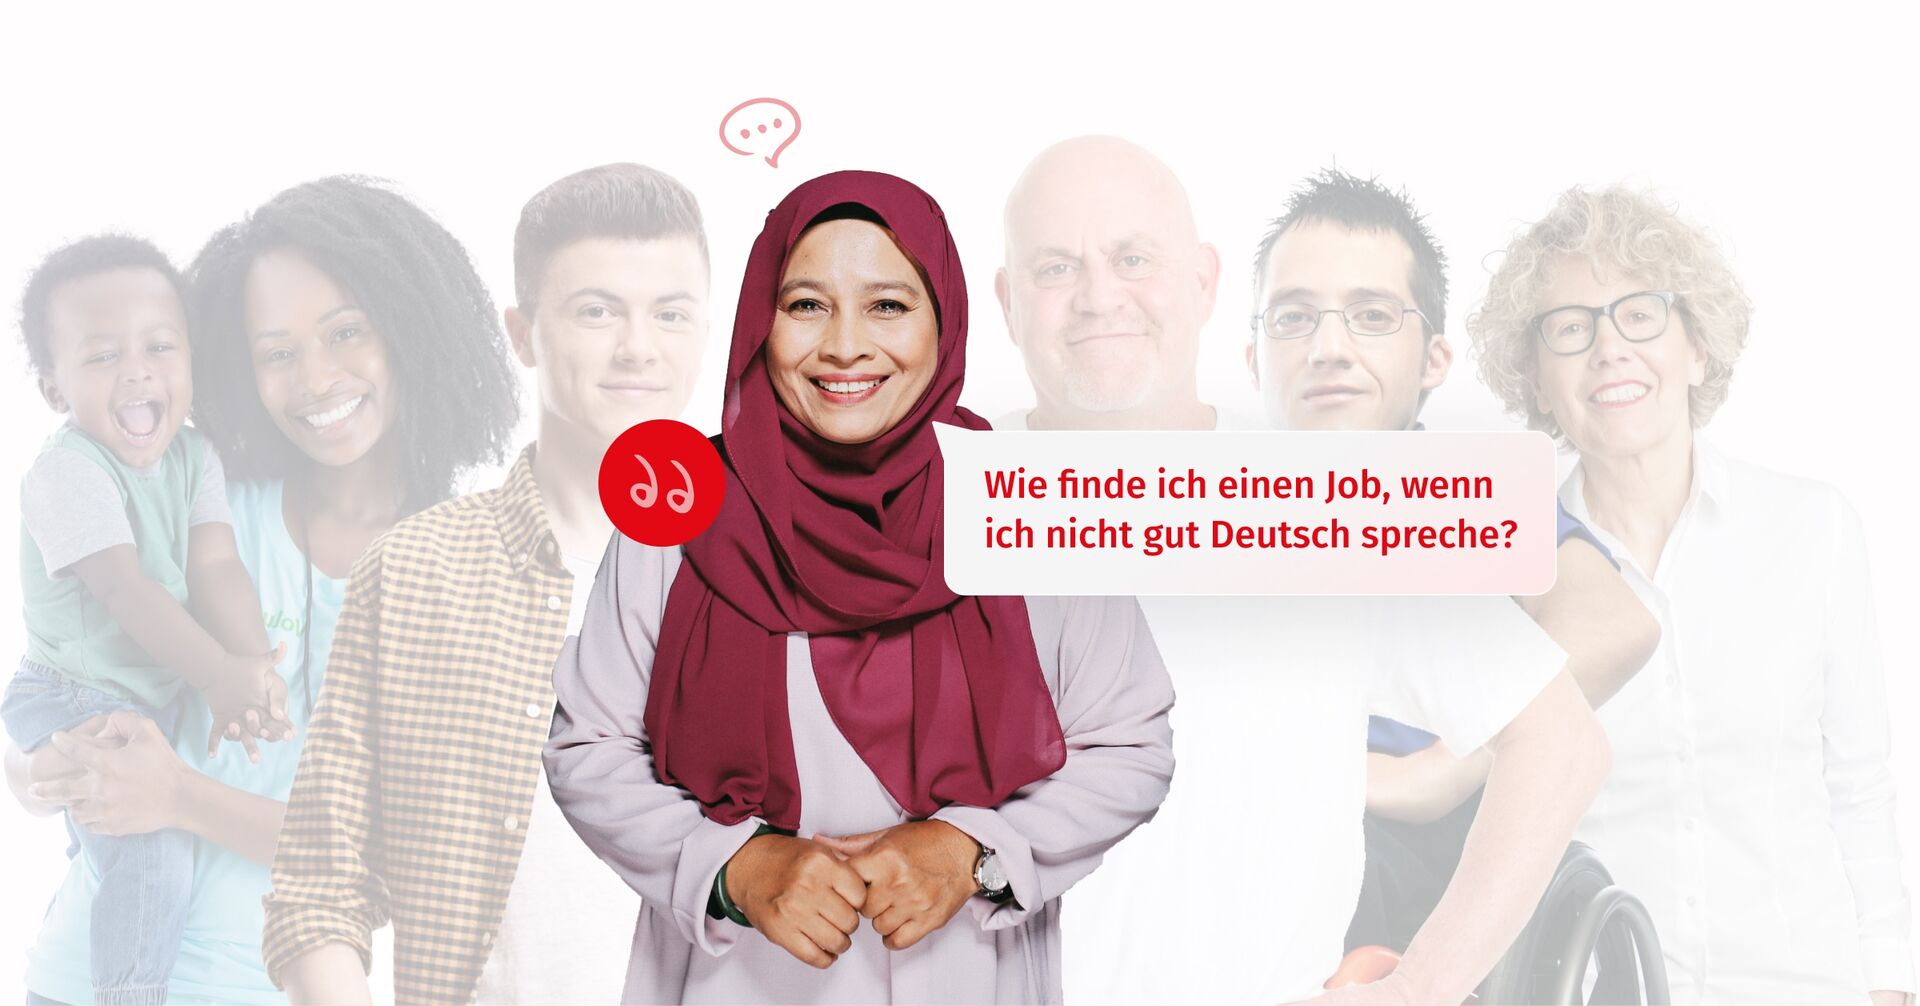 Verschiedene Menschen, vorne eine Migrantin, die sagt: Wie finde ich einen Job, wenn ich nicht gut Deutsch spreche? Zur Seite: Migrant:in in Bremen